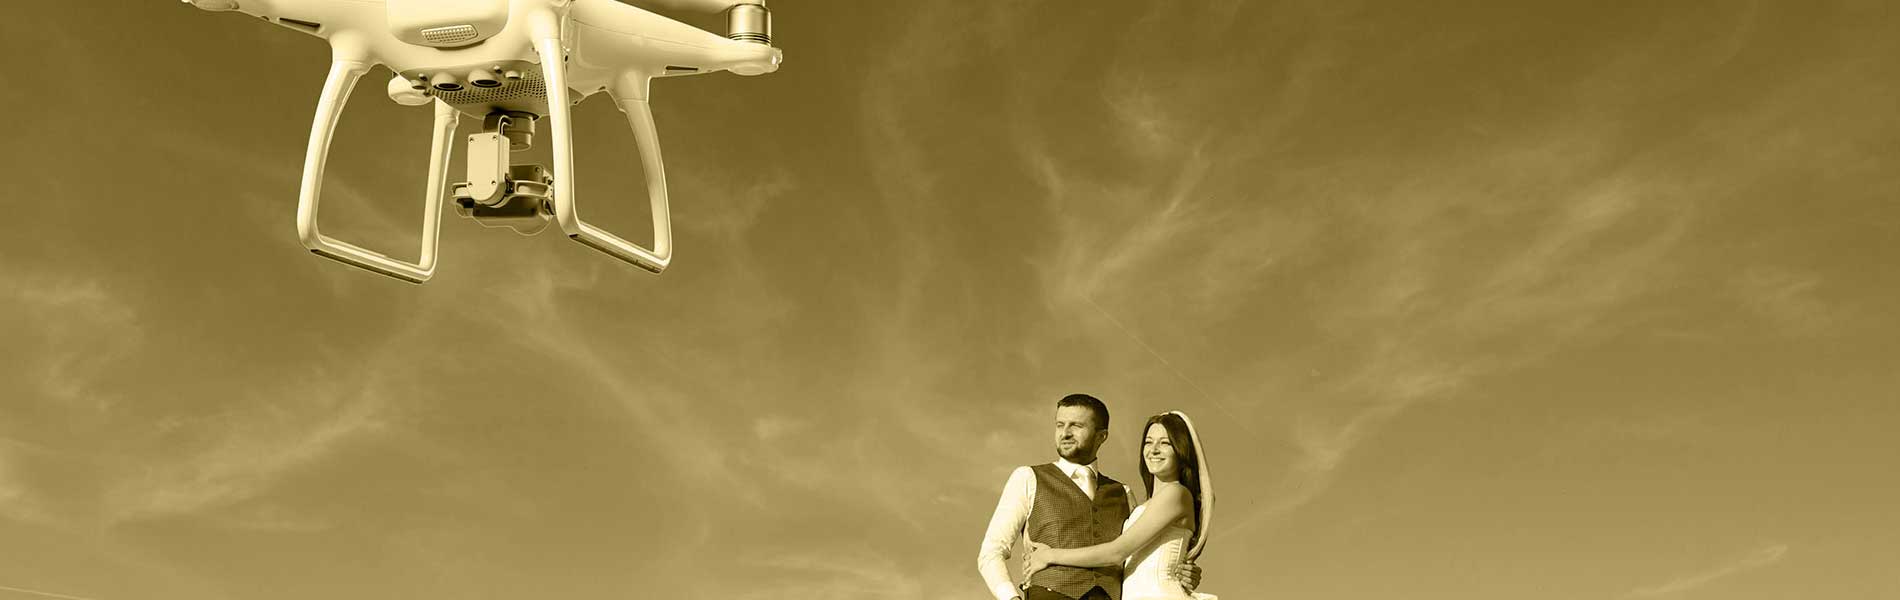 Prise de vue drone mariage